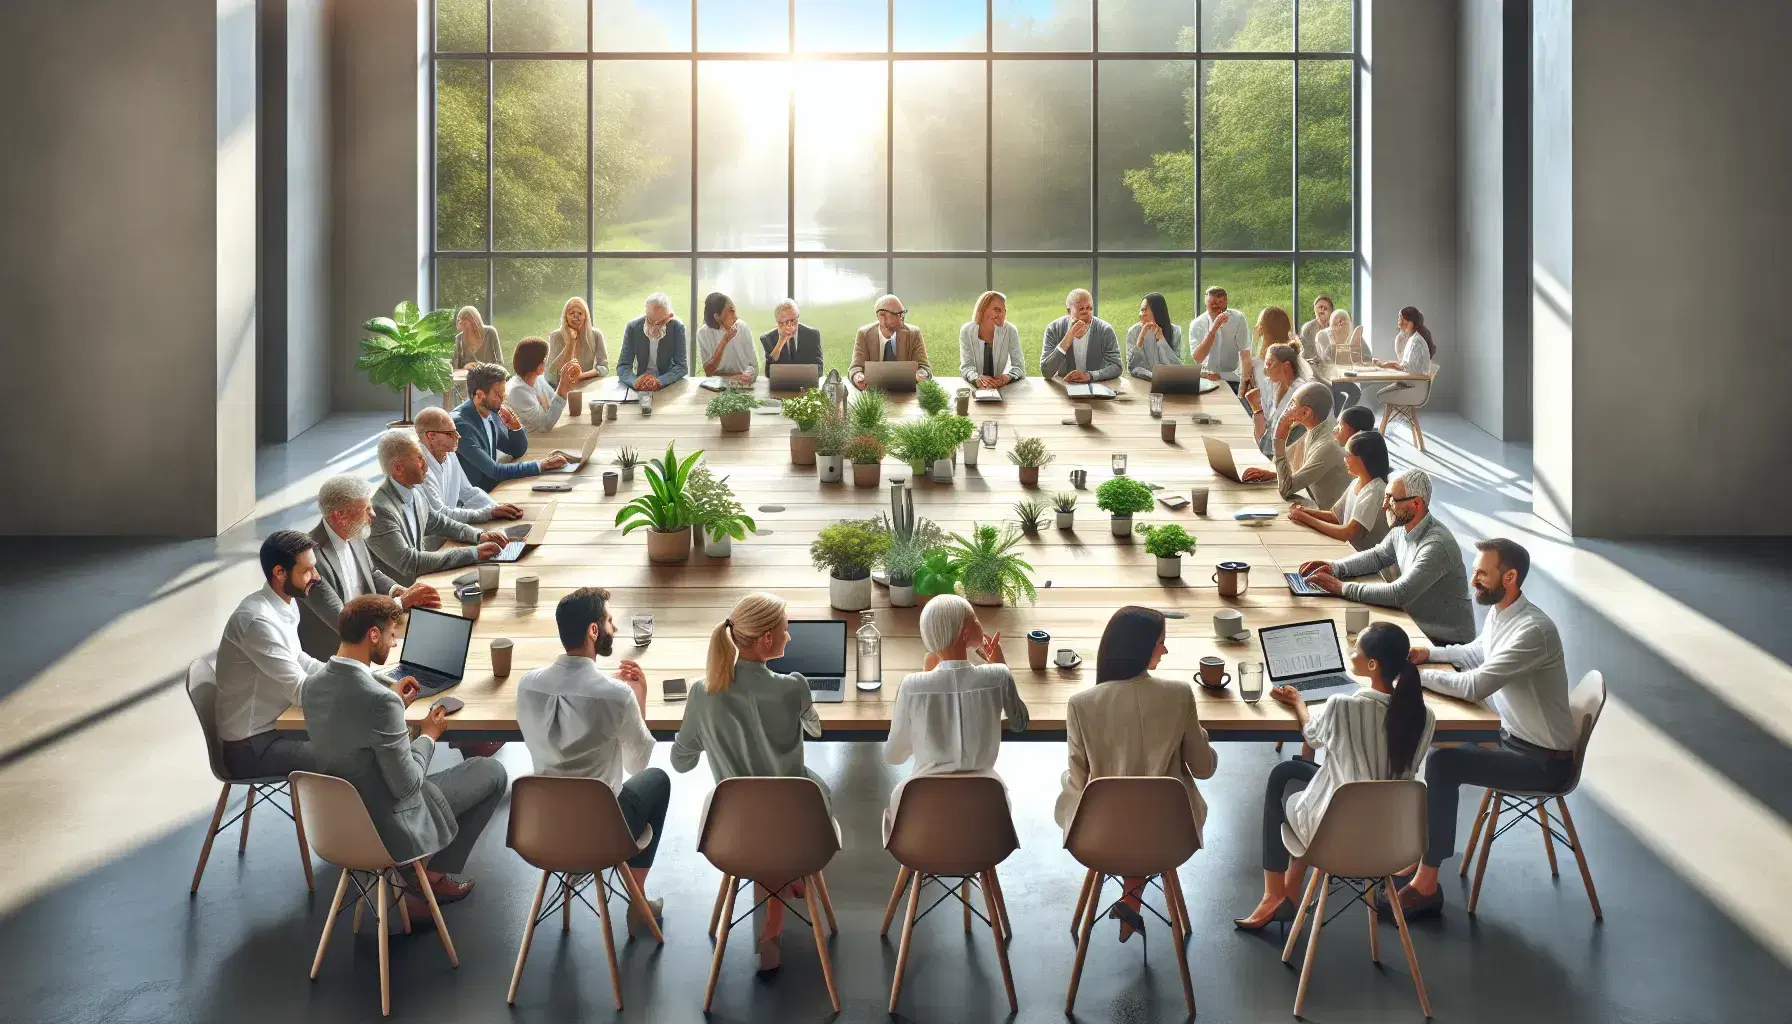 Grupo diverso de profesionales en reunión de trabajo en una oficina luminosa con ventanas grandes, laptops y plantas sobre la mesa.